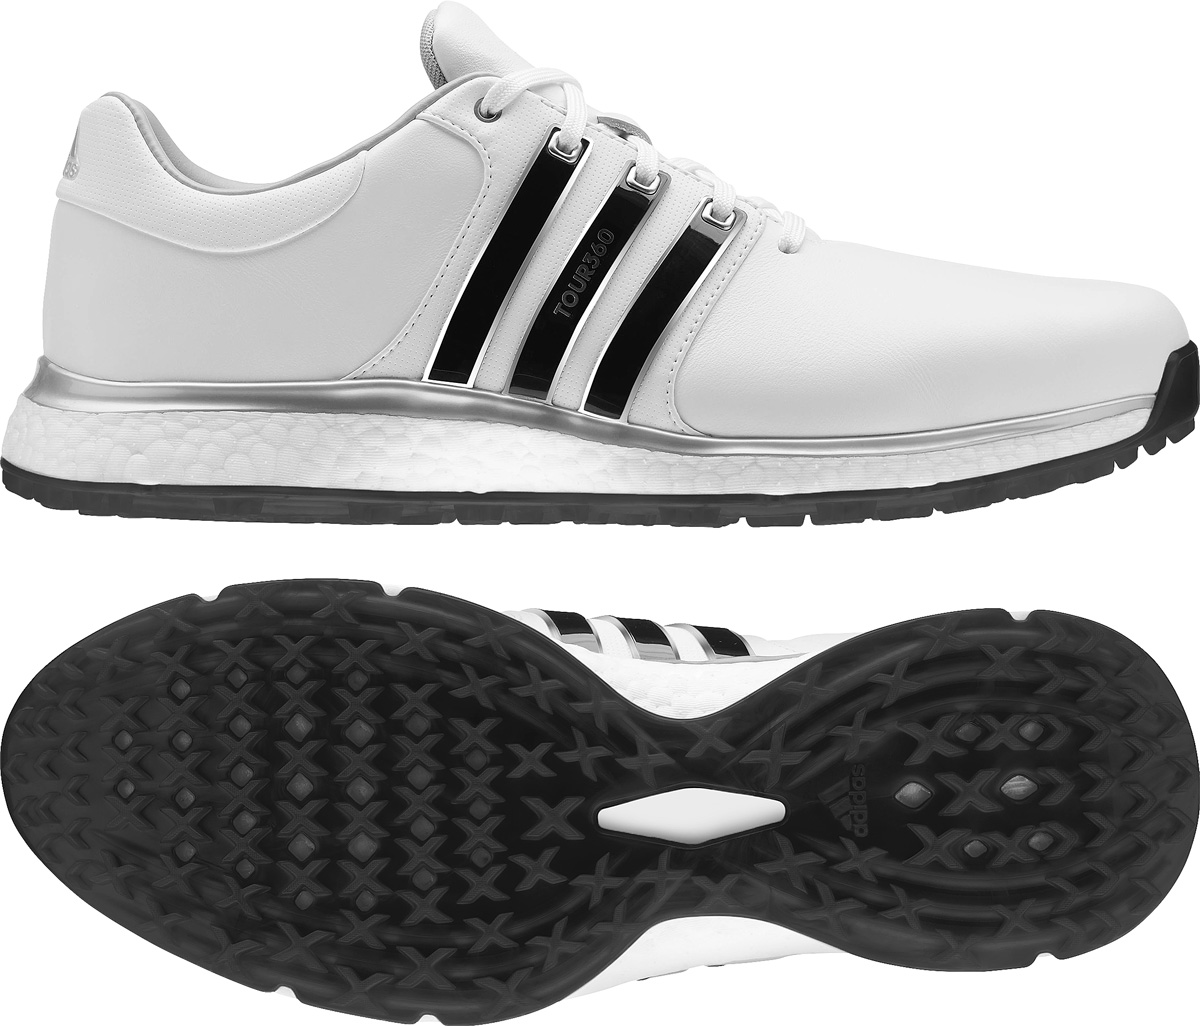 adidas 360 spikeless golf shoes